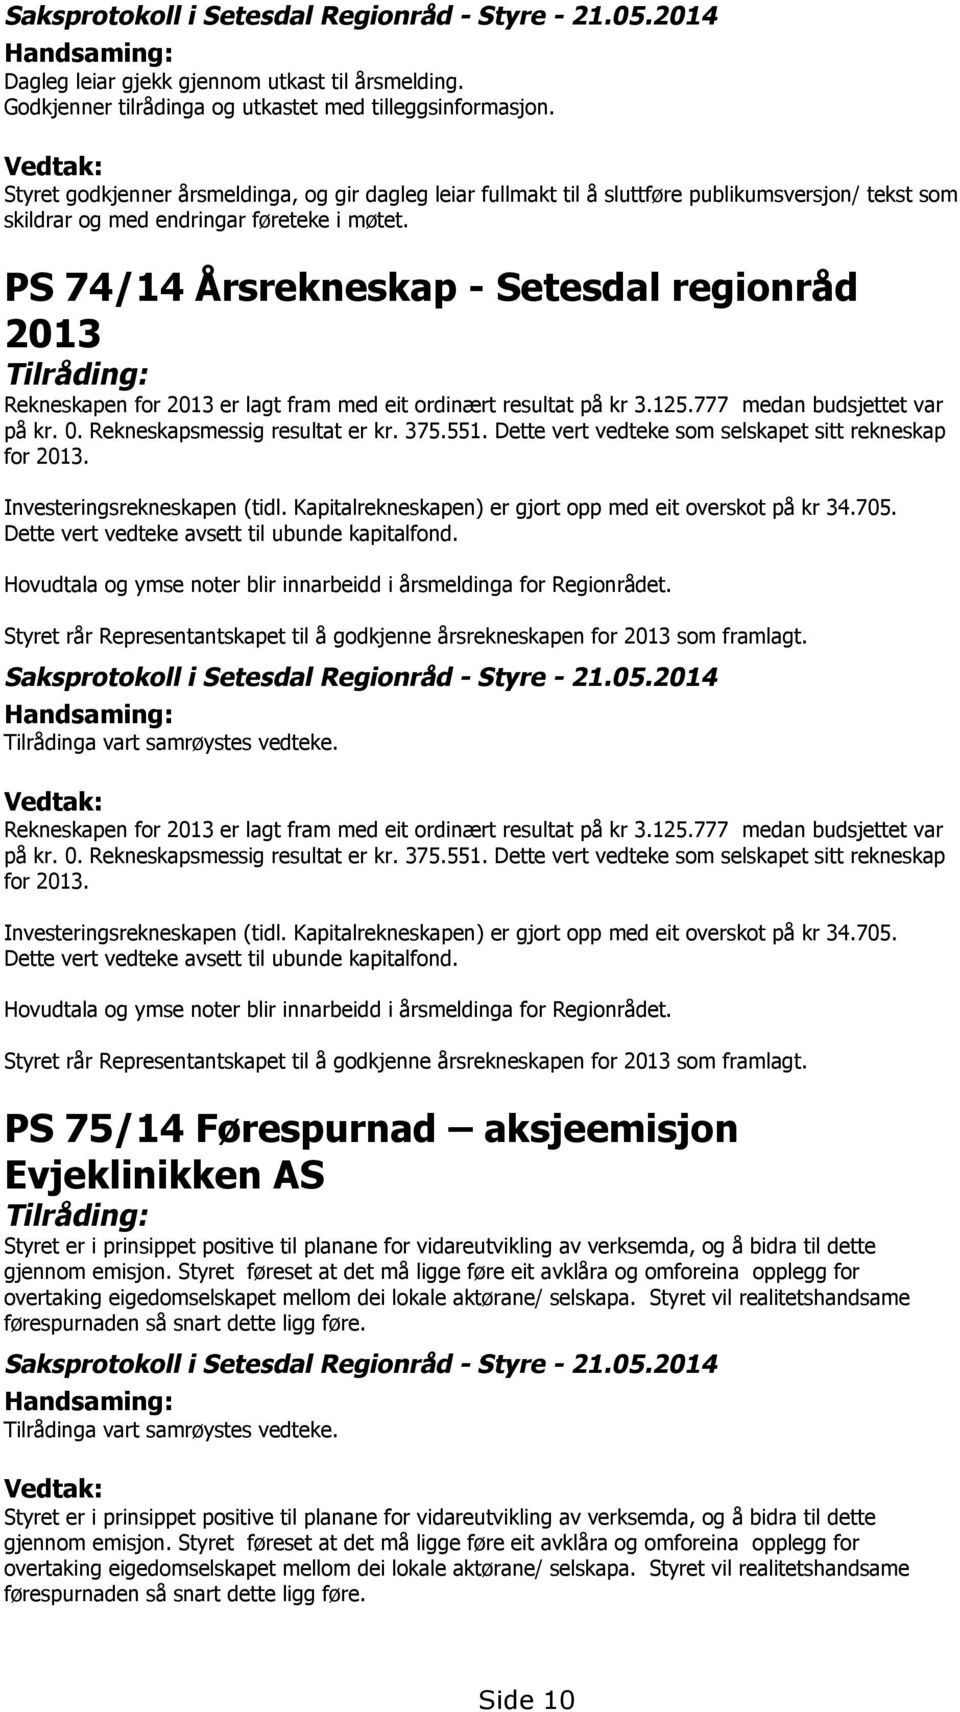 PS 74/14 Årsrekneskap - Setesdal regionråd 2013 Tilråding: Rekneskapen for 2013 er lagt fram med eit ordinært resultat på kr 3.125.777 medan budsjettet var på kr. 0. Rekneskapsmessig resultat er kr.